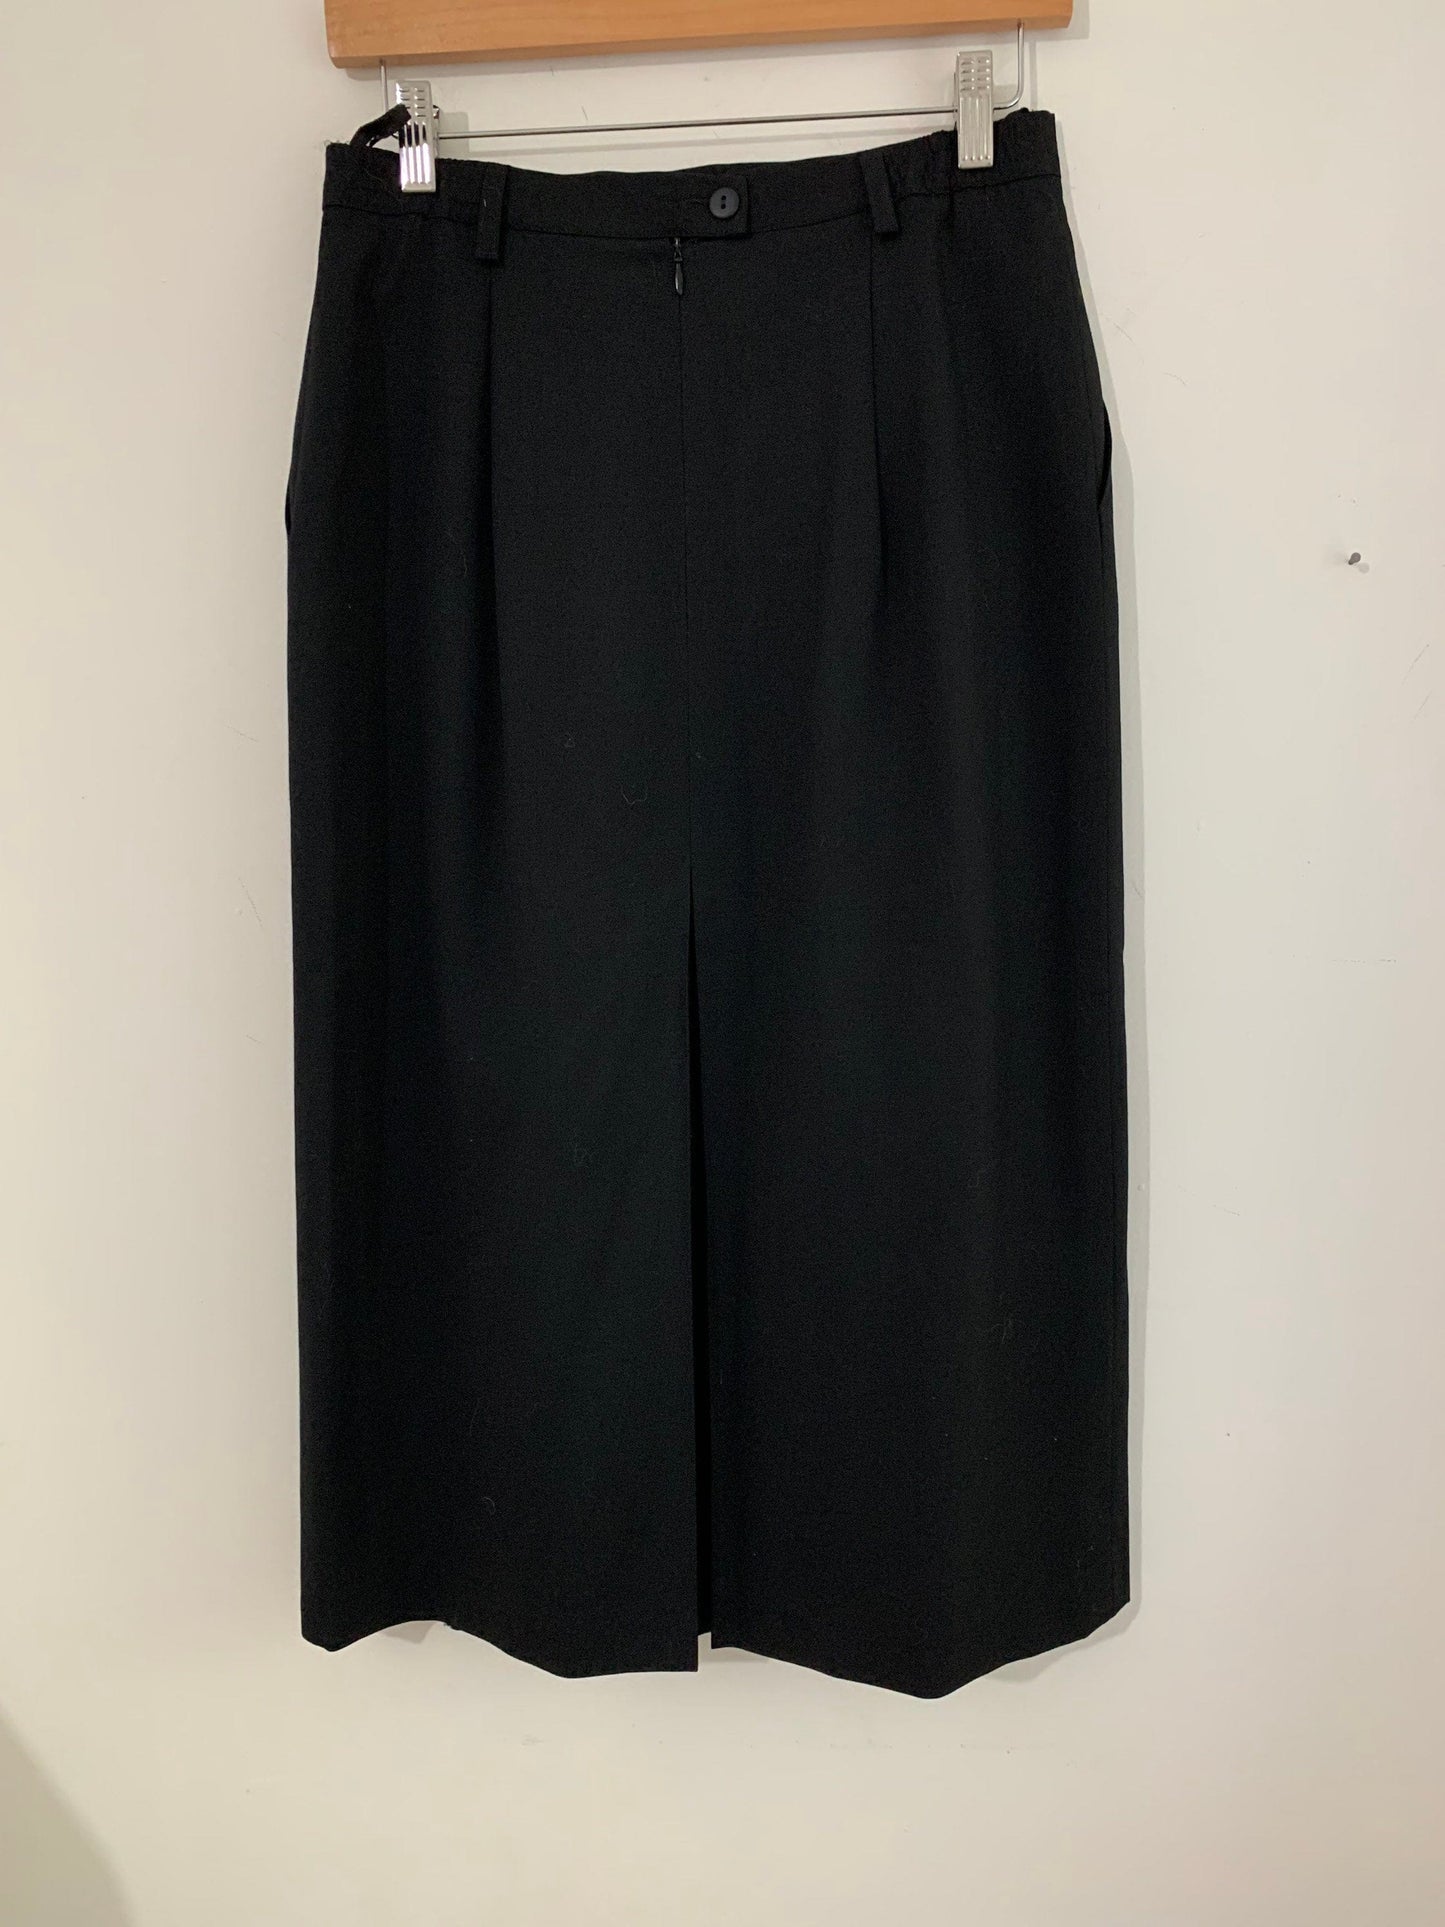 Vintage Skirt Box Pleat A Line Midi Length Black UK 12-14 - Fink - vintage pleated skirt